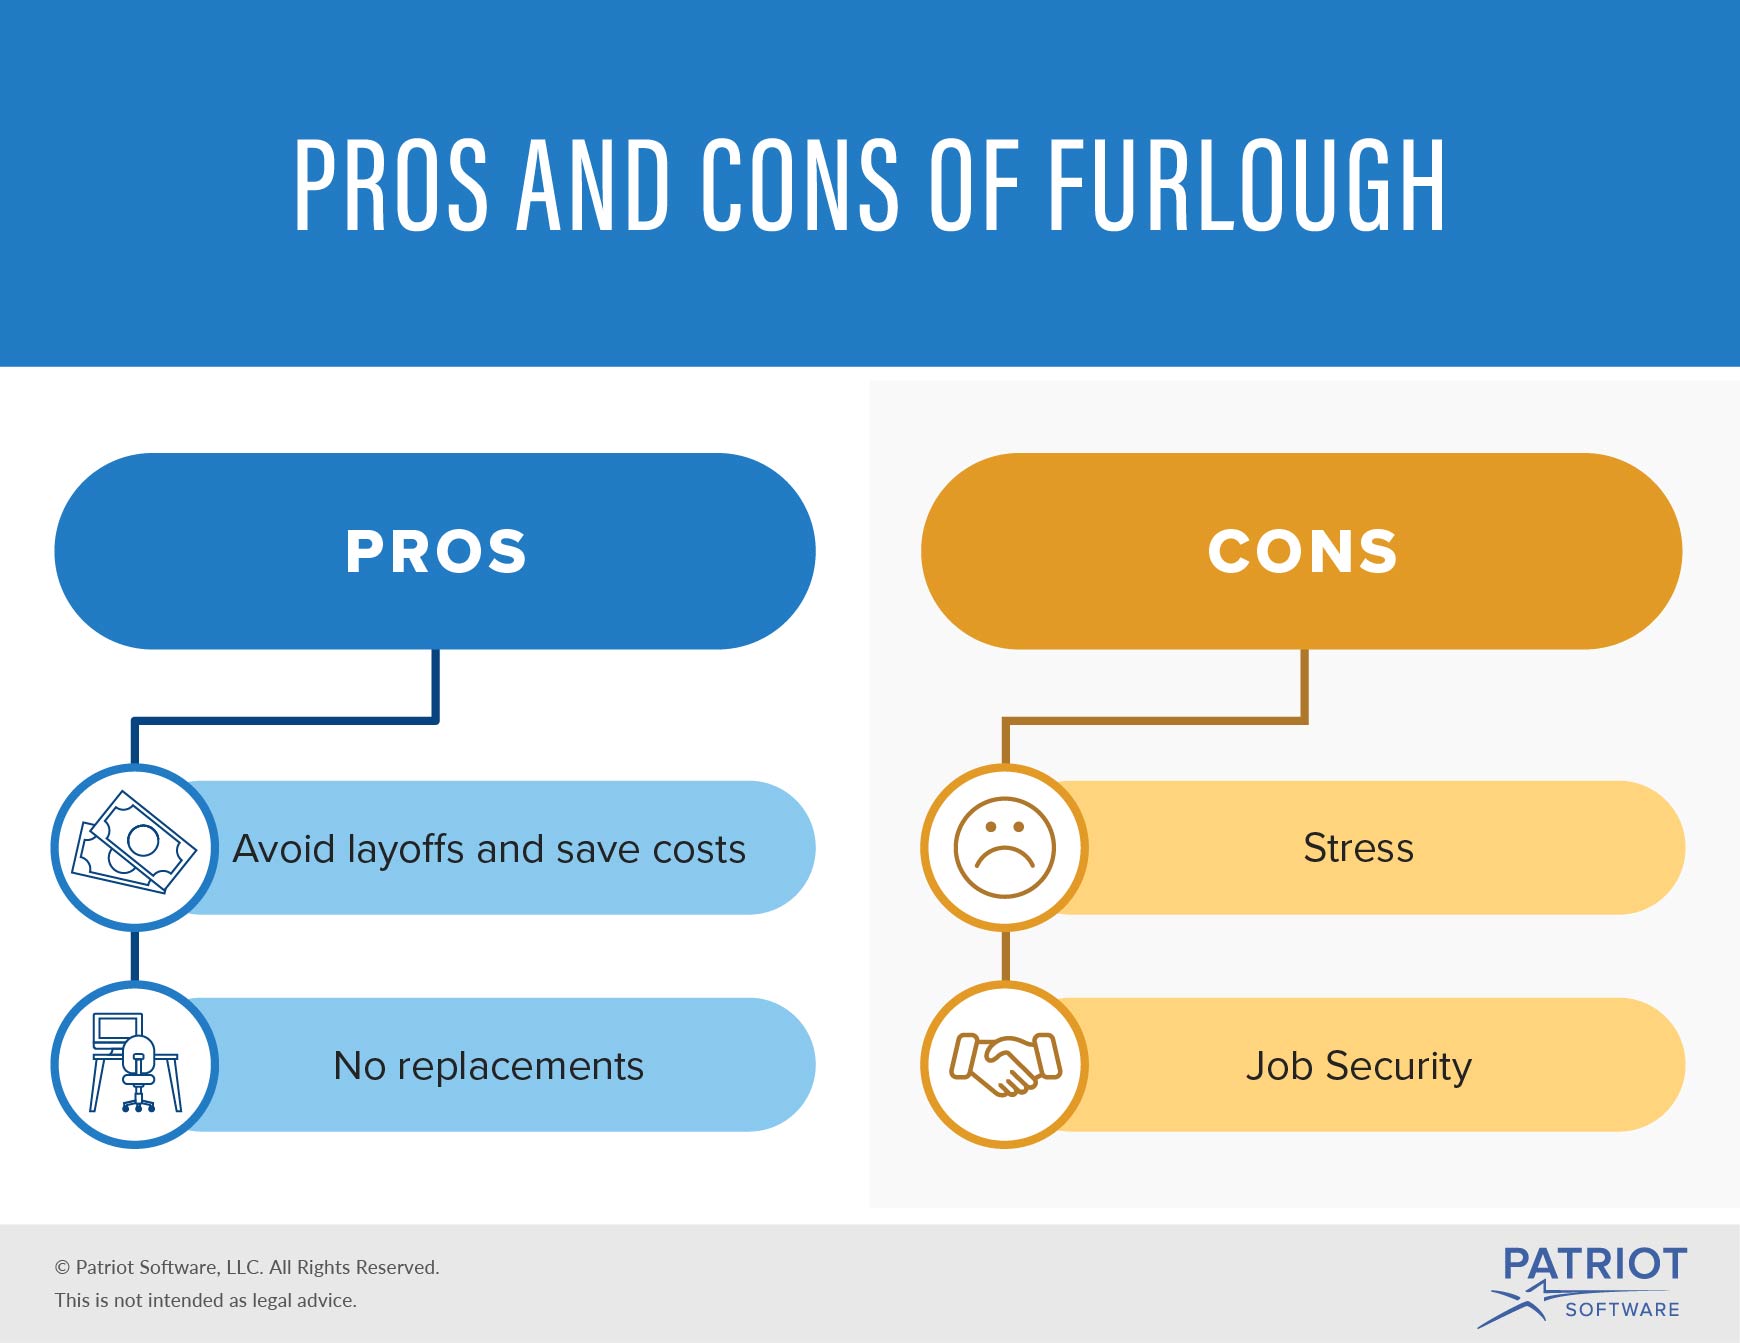 What Is Furlough? Furlough definition, Pros, Cons, & More